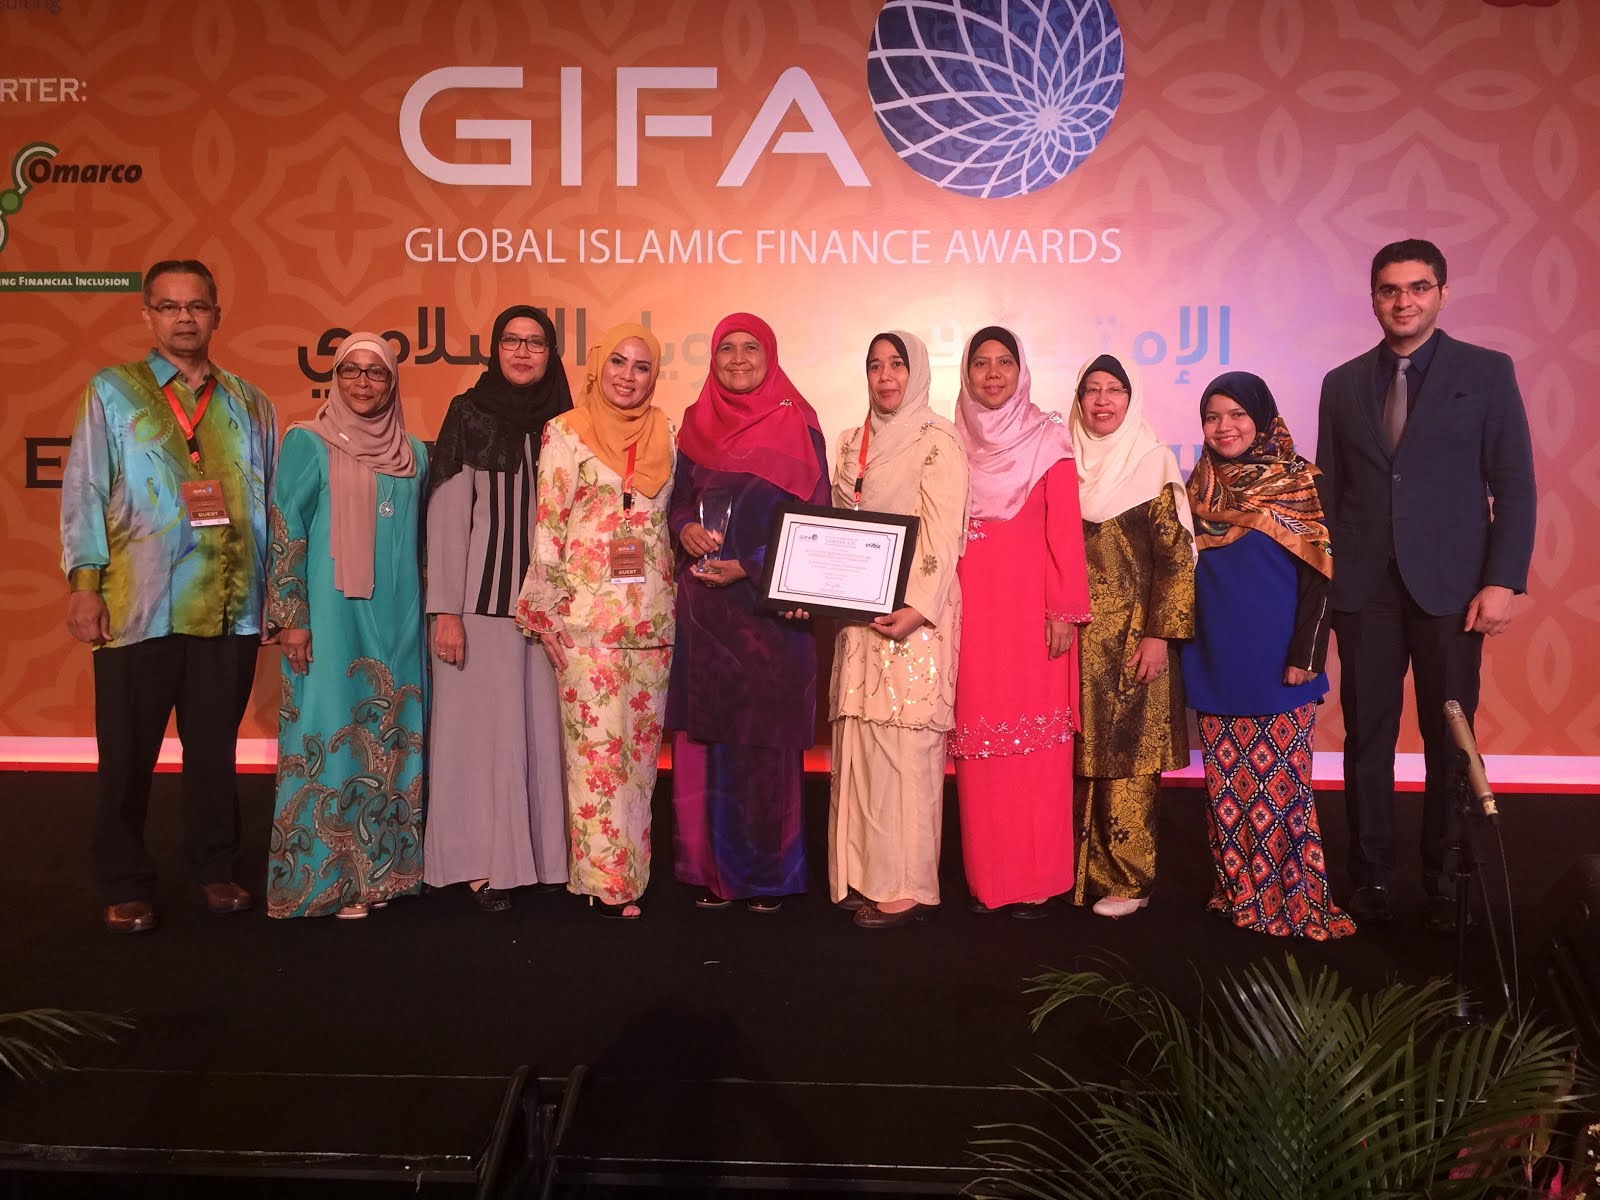 WINNER of Global Islamic Finance Awards 2016: